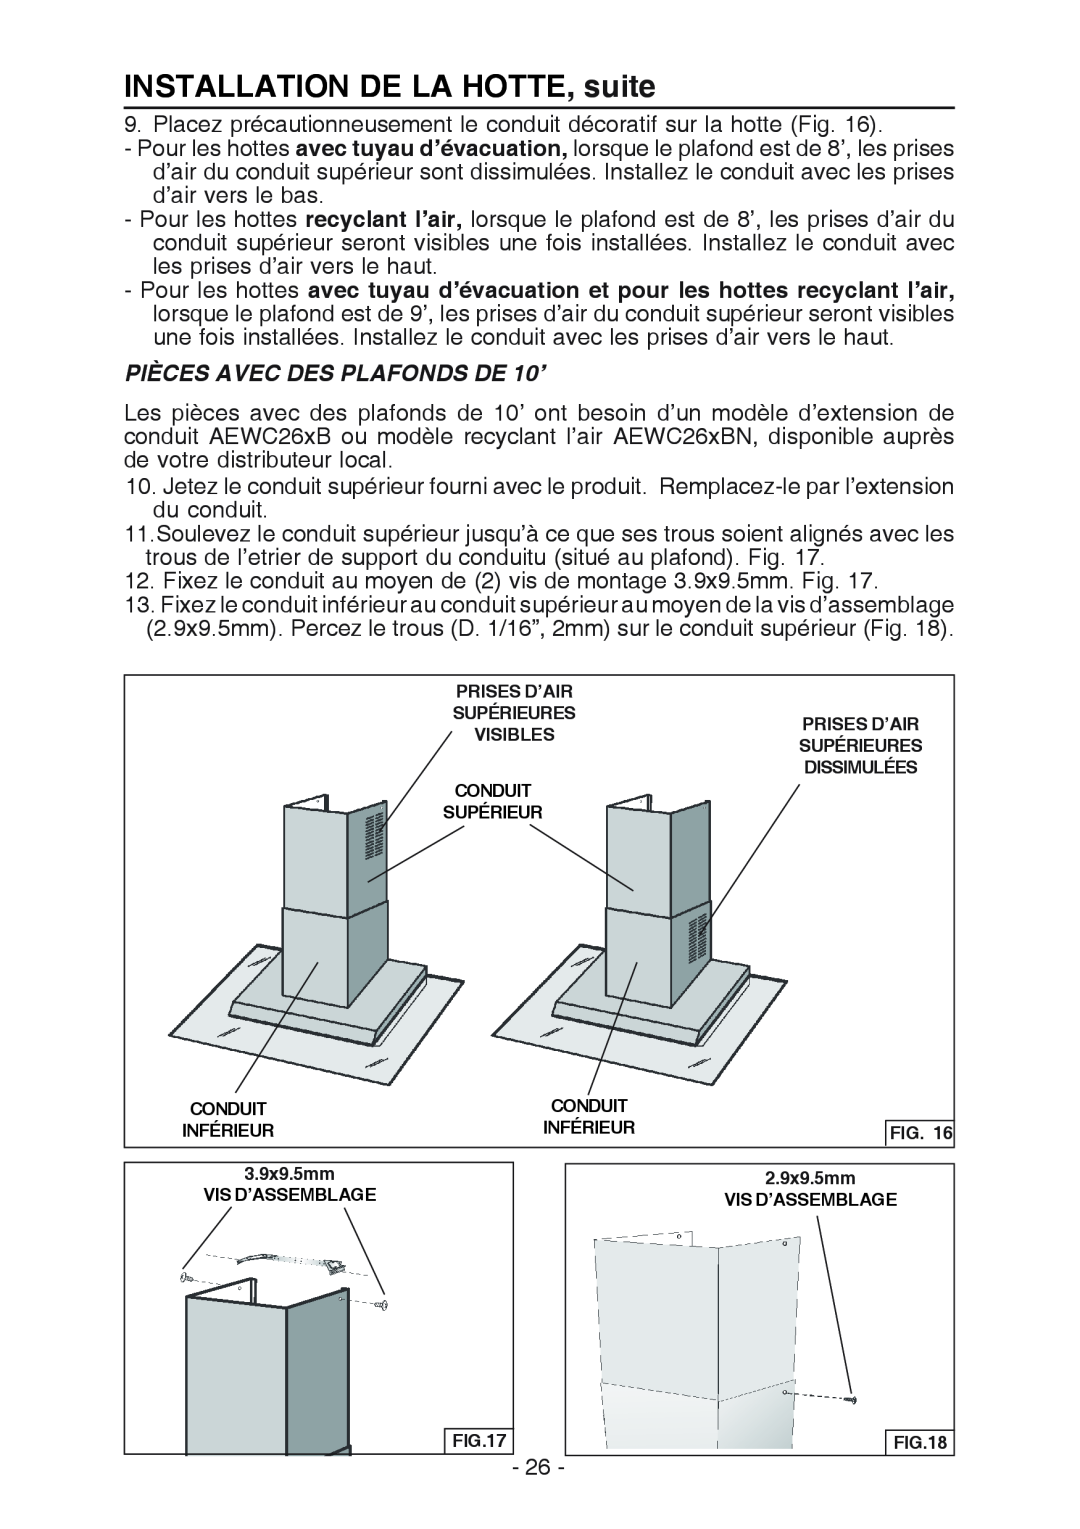 Broan WC26I manual INSTALLATION DE LA HOTTE, suite, PIÈCES AVEC DES PLAFONDS DE 10’ 